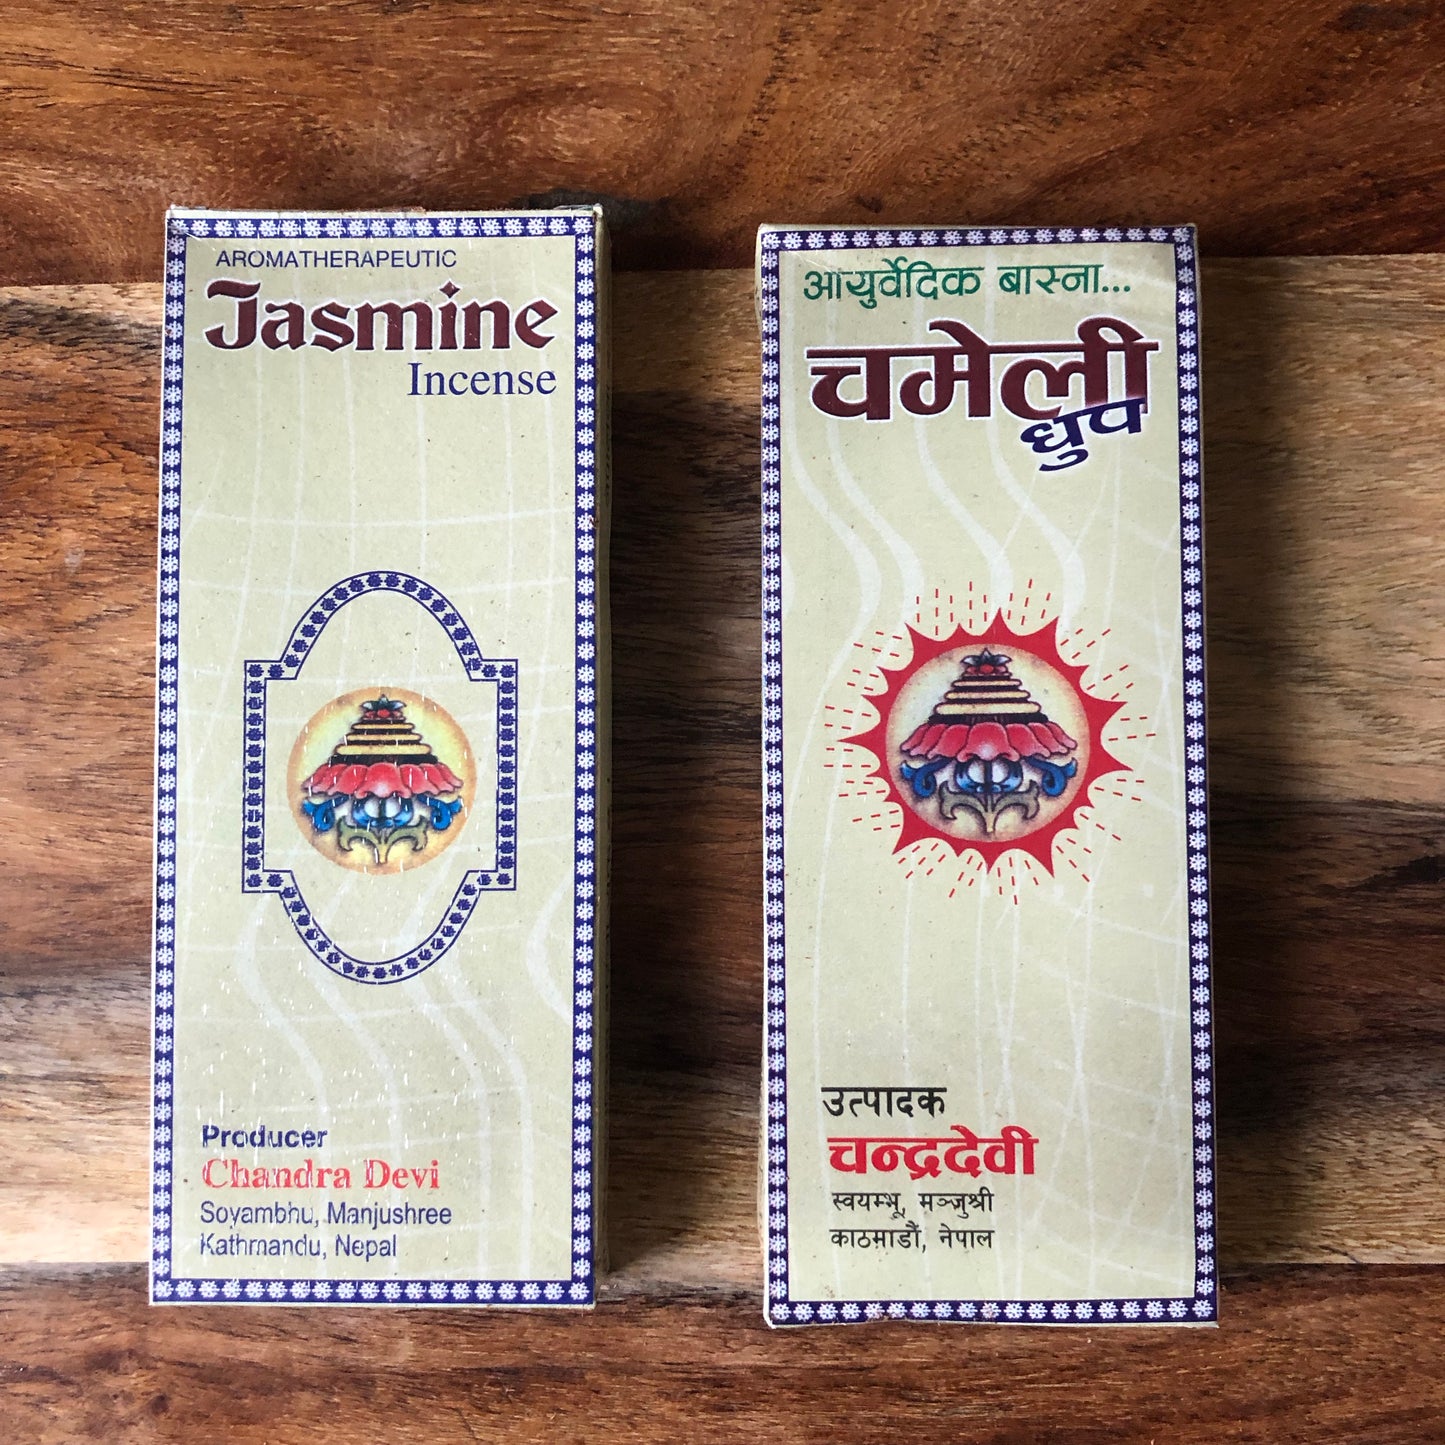 Chandra Devi Jasmine incense